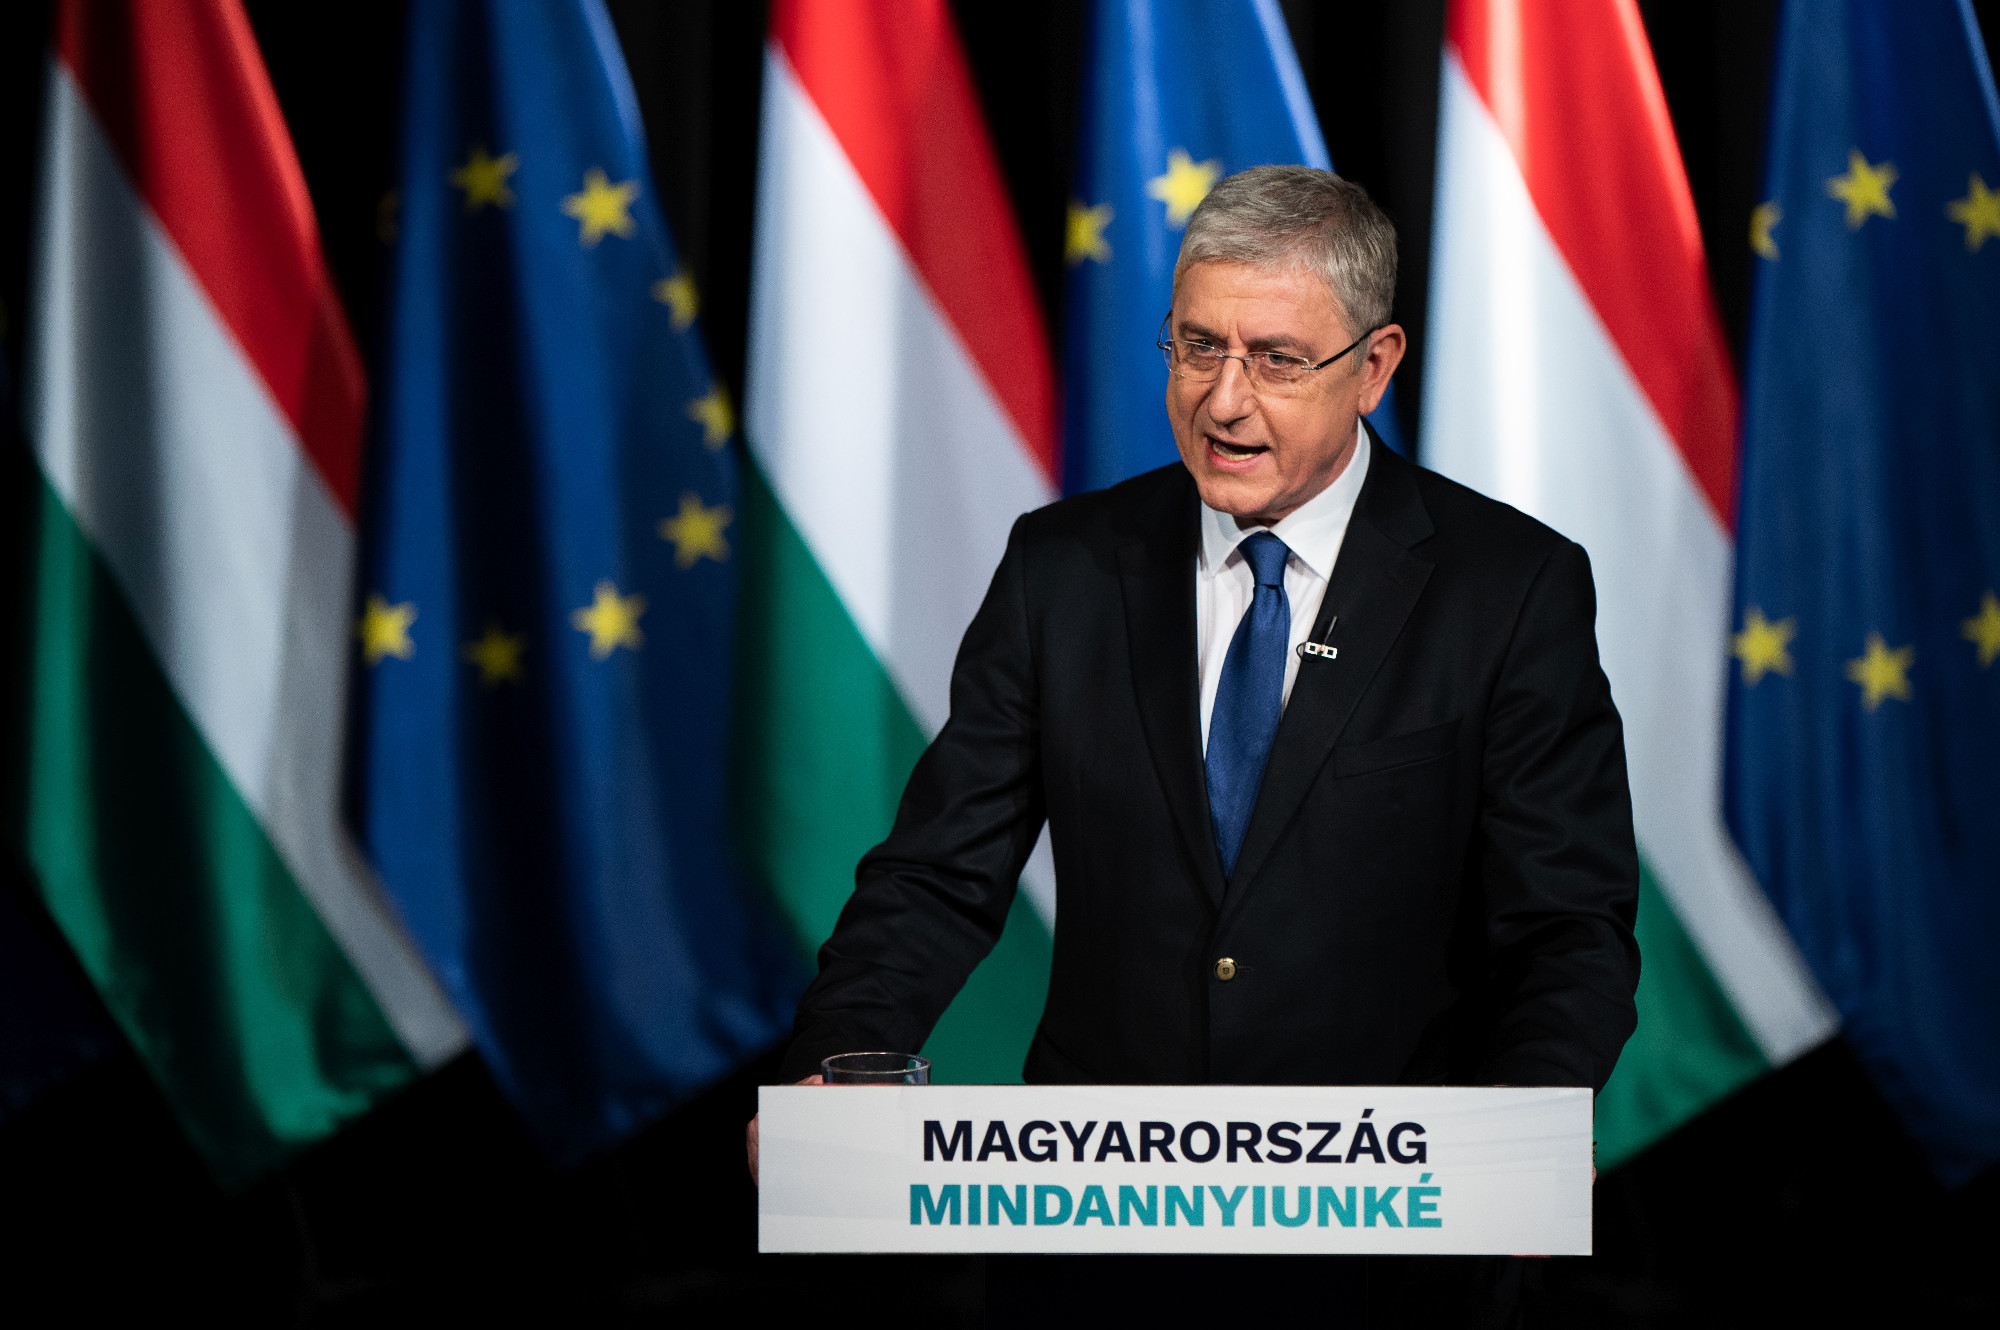 Gyurcsány Ferenc: A Fidesz nem vitatkozni, hanem ölni akar